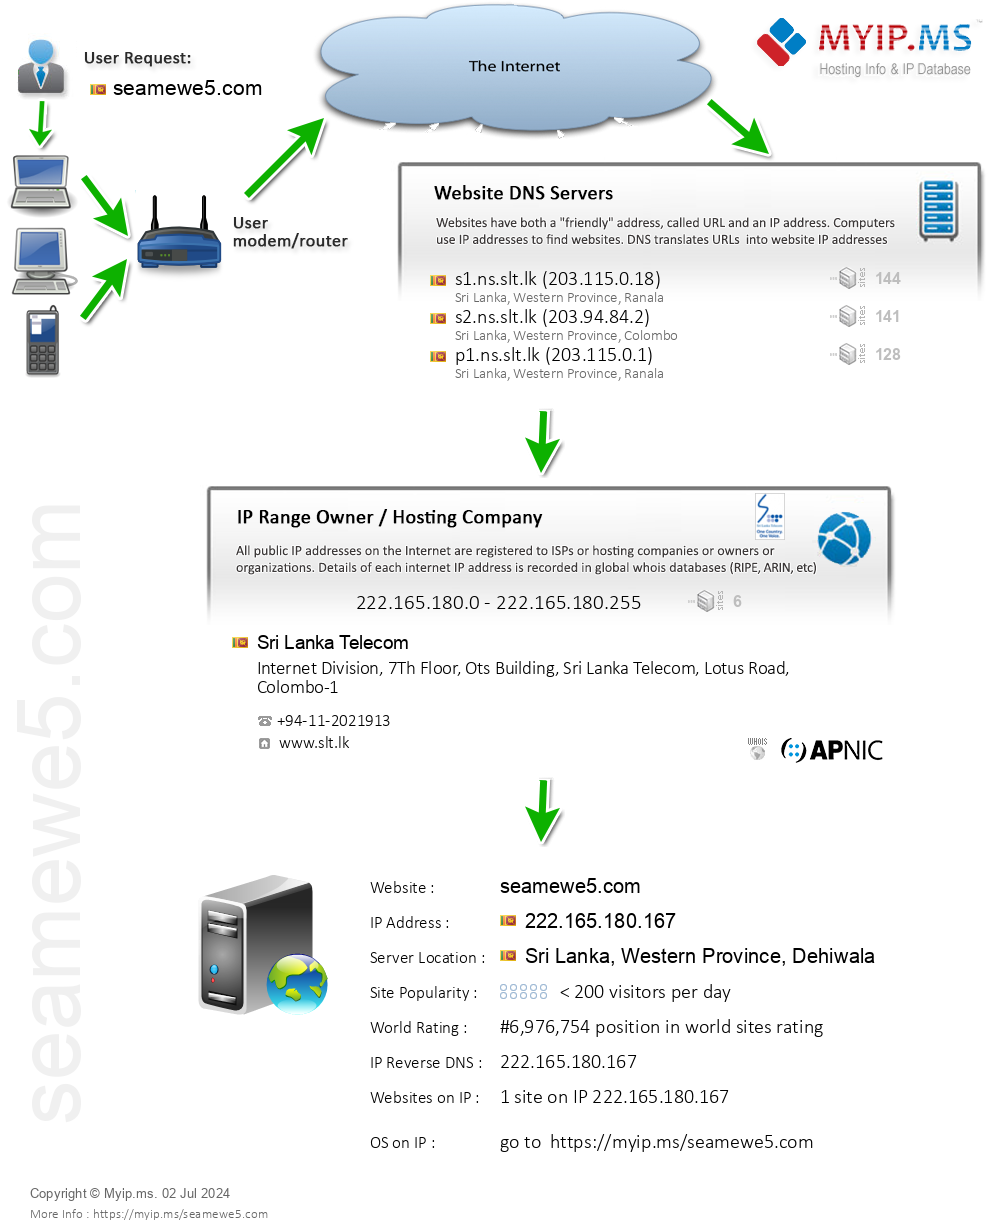 Seamewe5.com - Website Hosting Visual IP Diagram